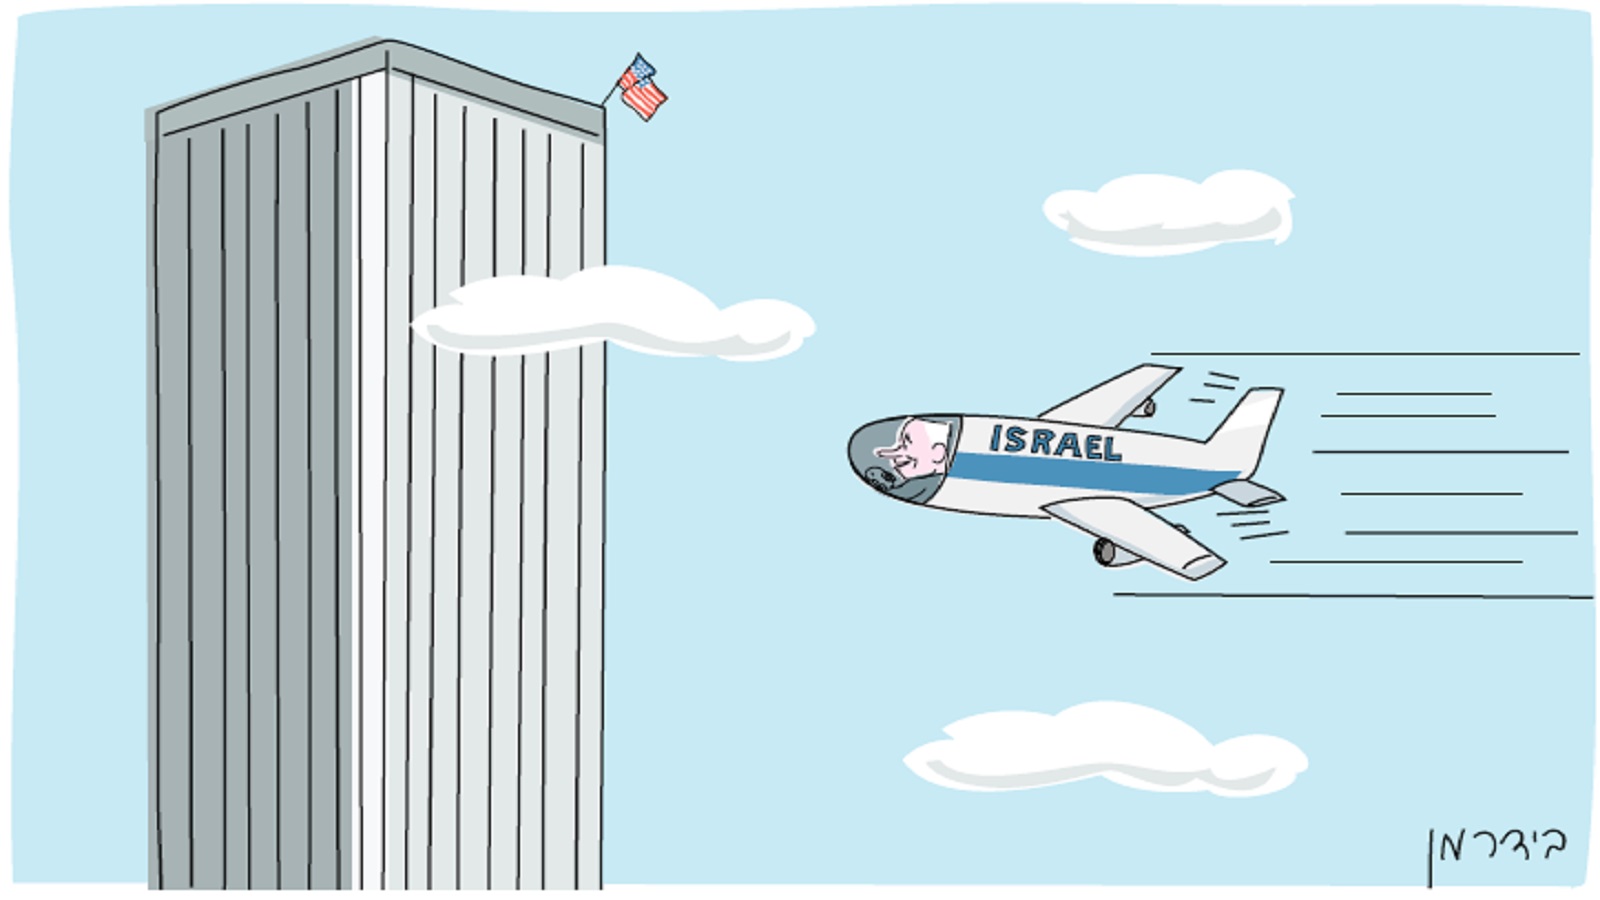 الكاريكاتير الذي جنّن إسرائيليين